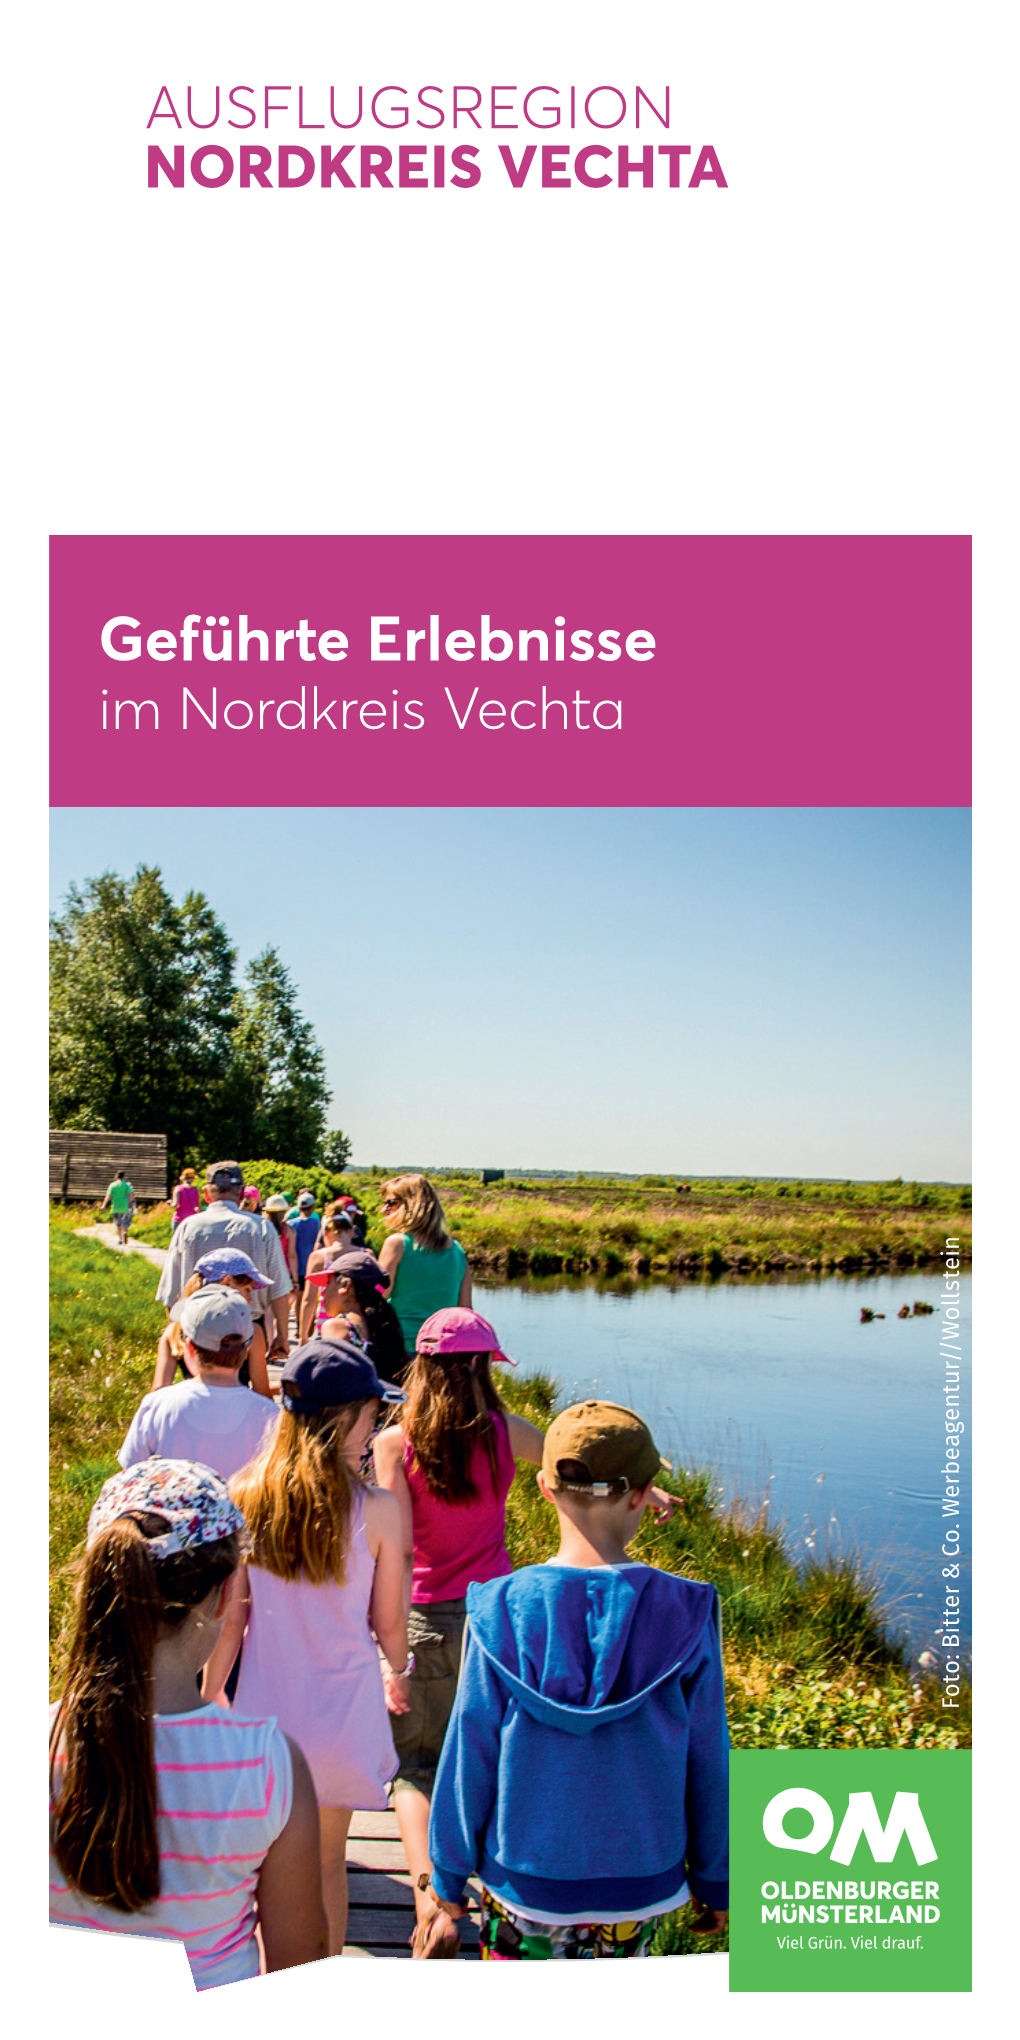 NKV Nordkreis Vechta Geführte Erlebnisse DIN Lang 01-20.Indd